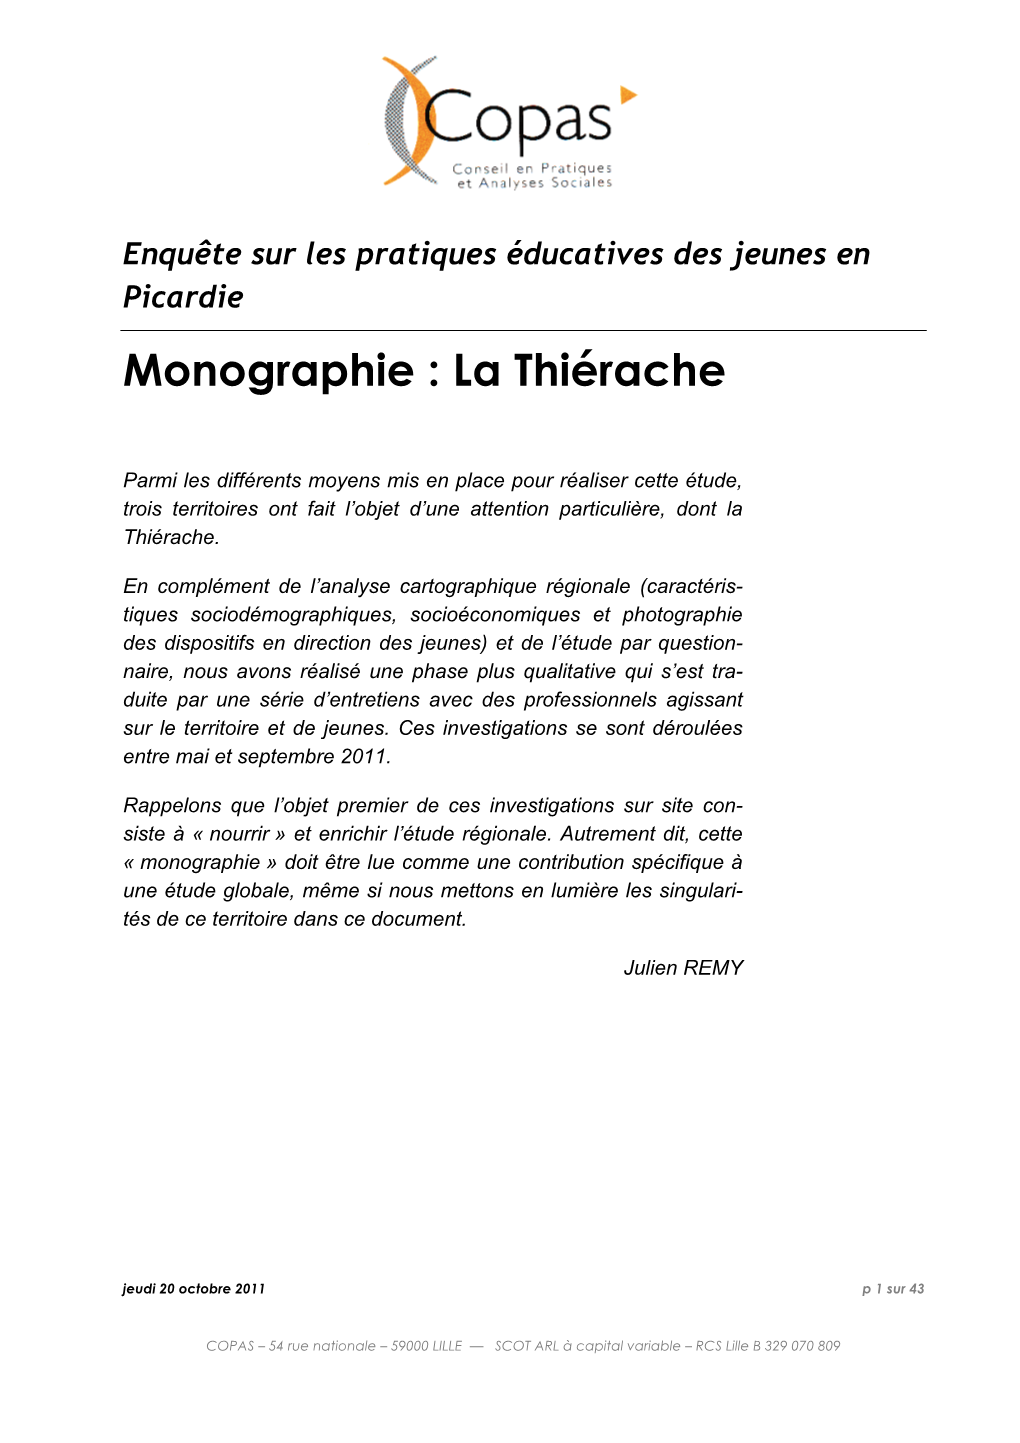 Monographie De La Thiérache, Conseil Régional, Mars 2006, Page 50